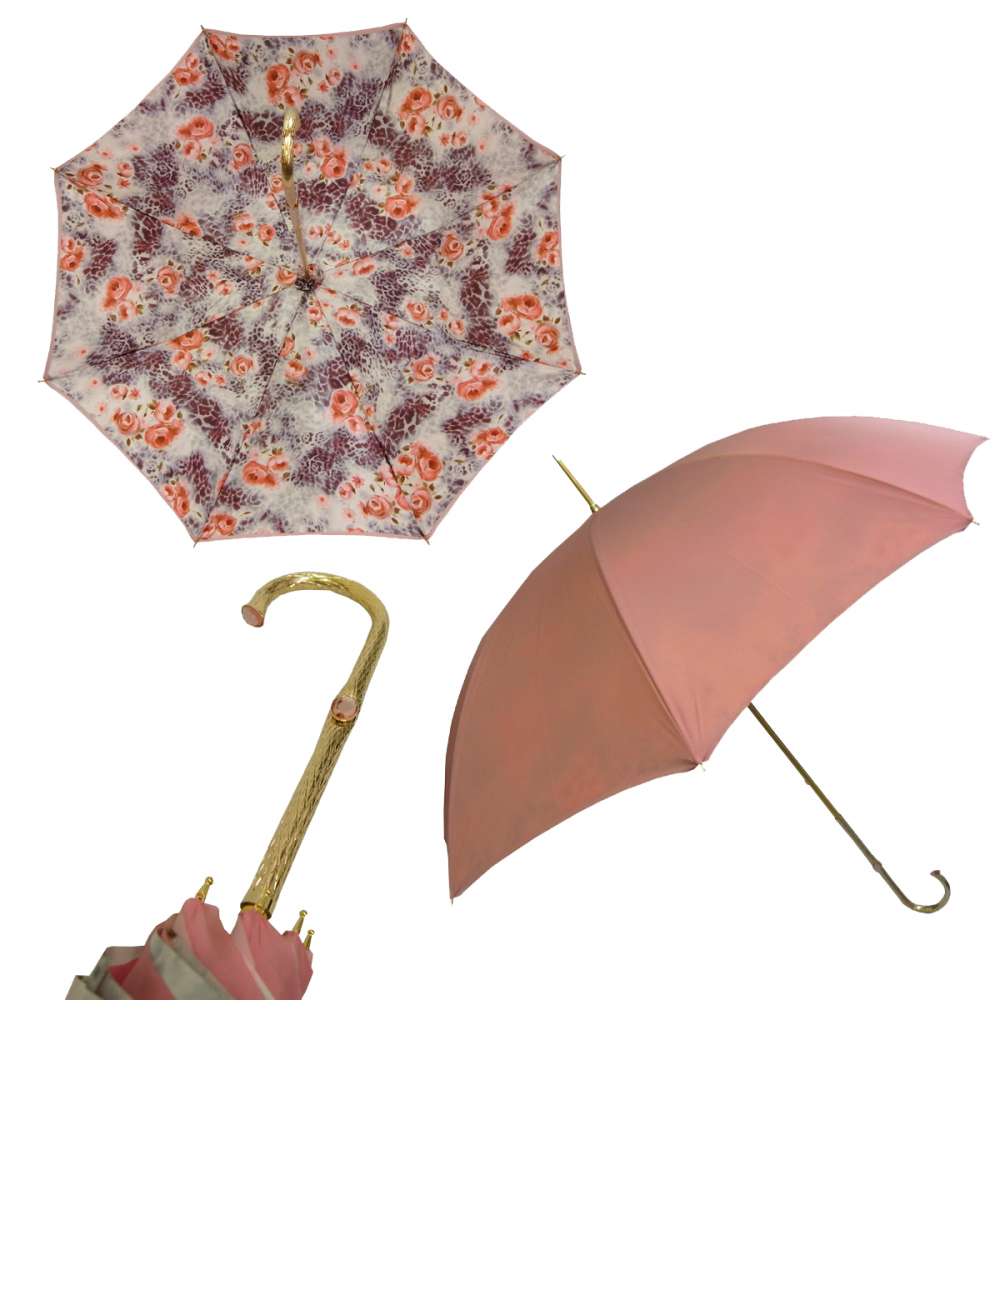 在庫切れ（完売）となりました。次回入荷は未定でございます。ご購入いただき誠にありがとうございました。#パソッティ #傘 #かさ #レディース